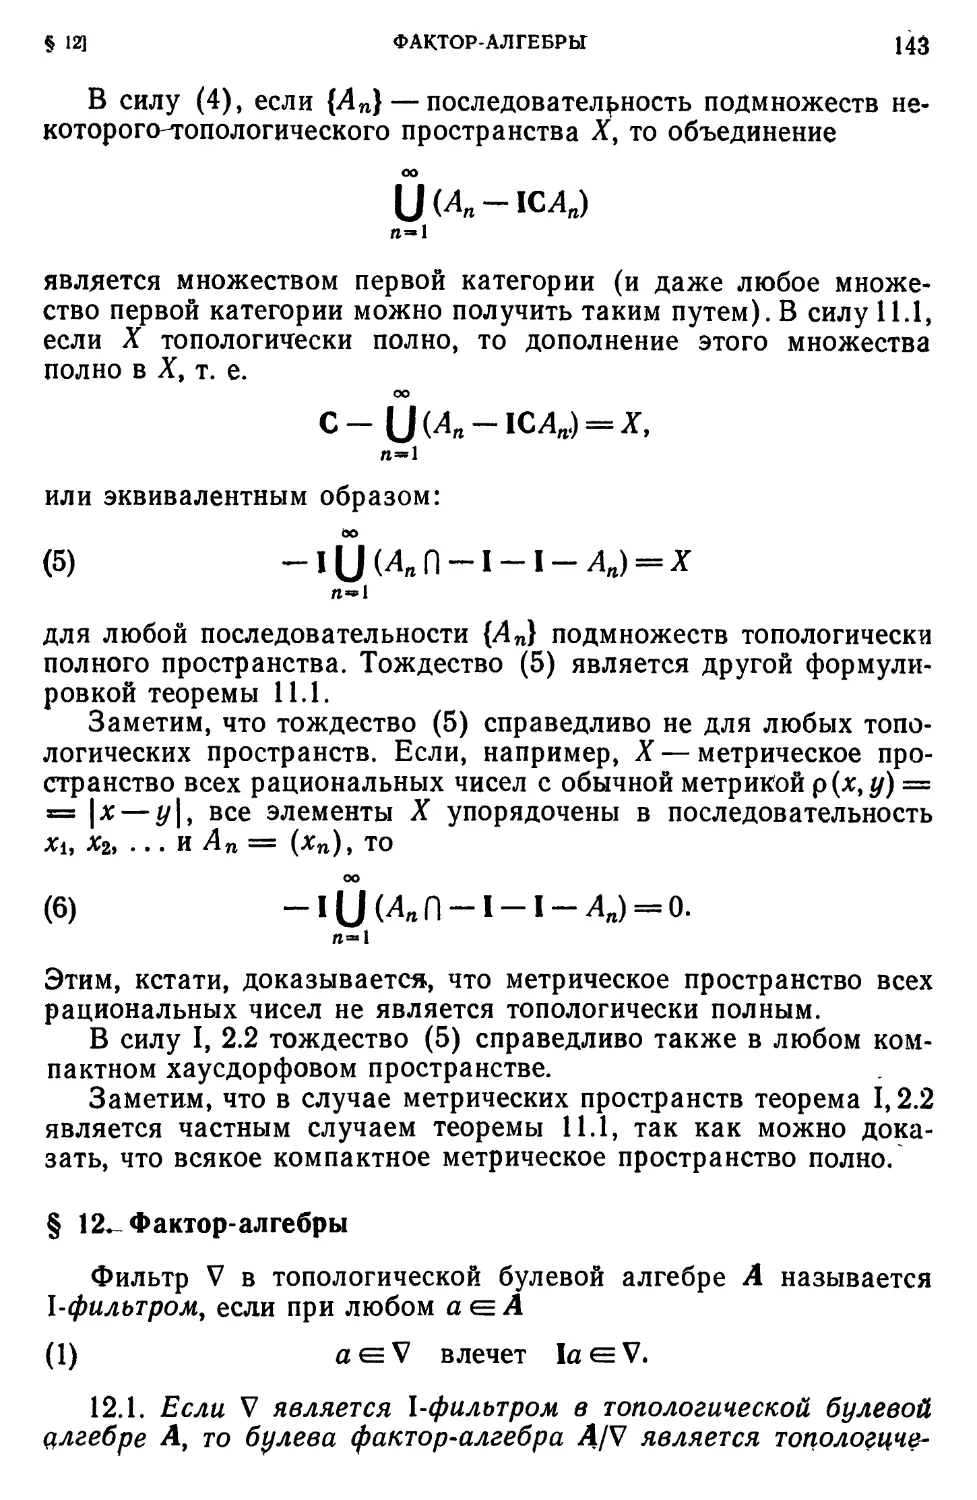 § 12. Фактор-алгебры